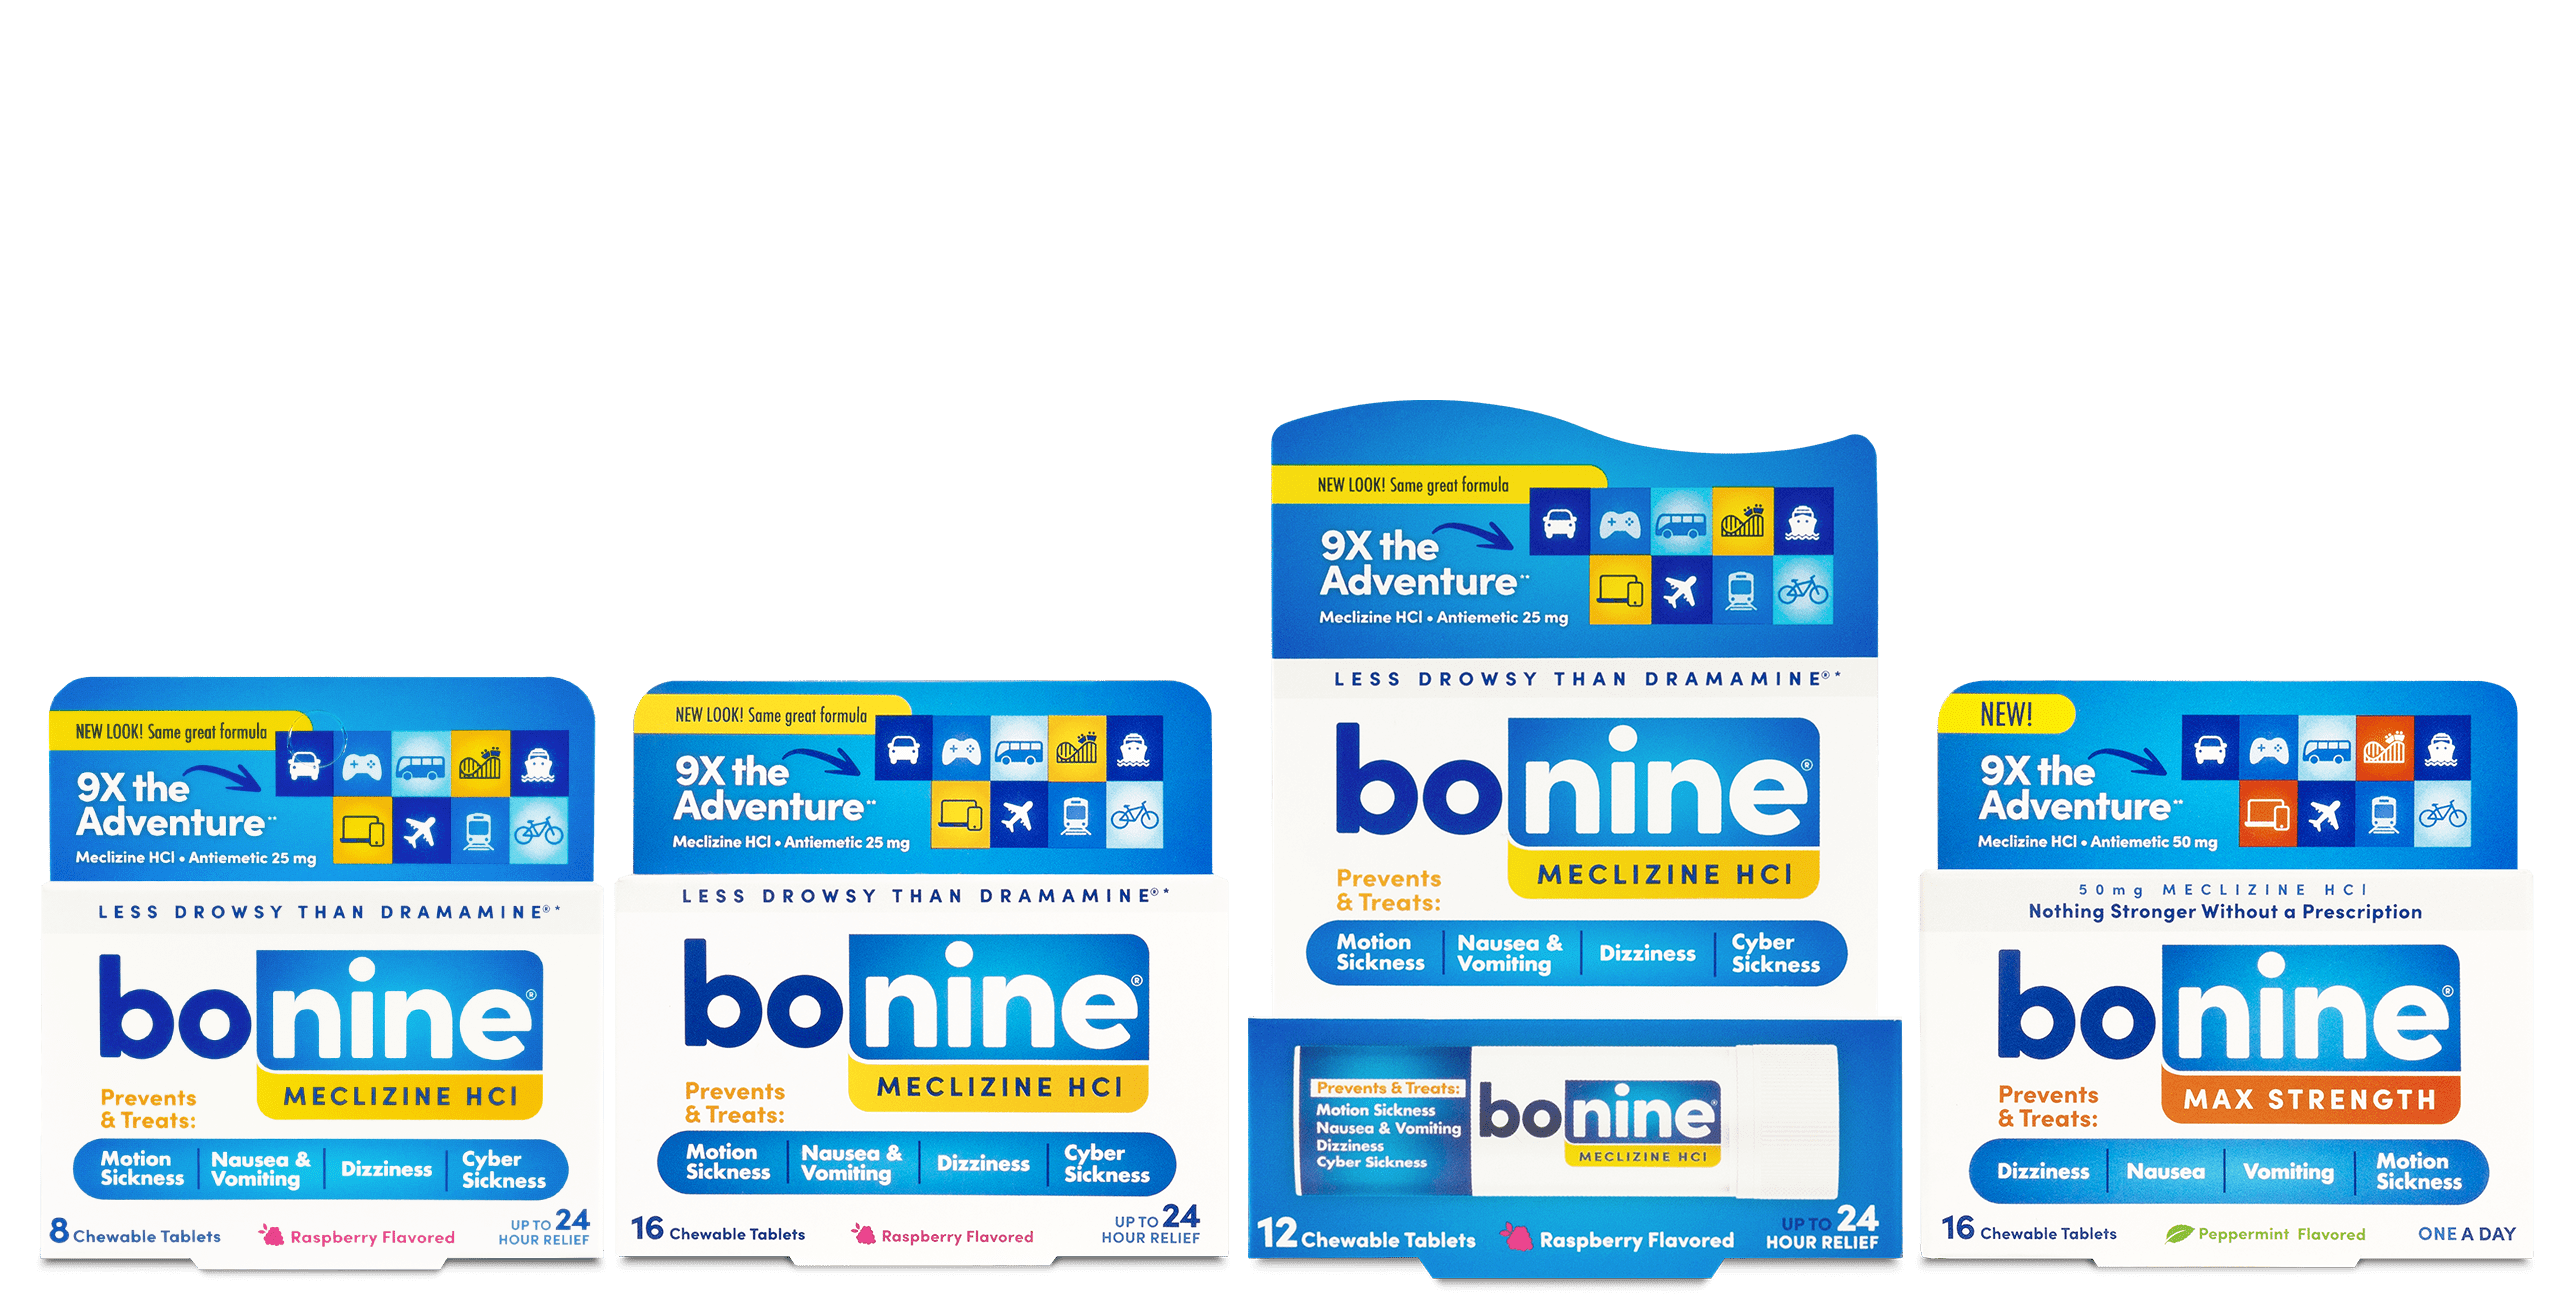 Bonine product line. 8 chewable tablets, 16 chewable tablets, 12 chewable tablets, 16 chewable max strength tablets